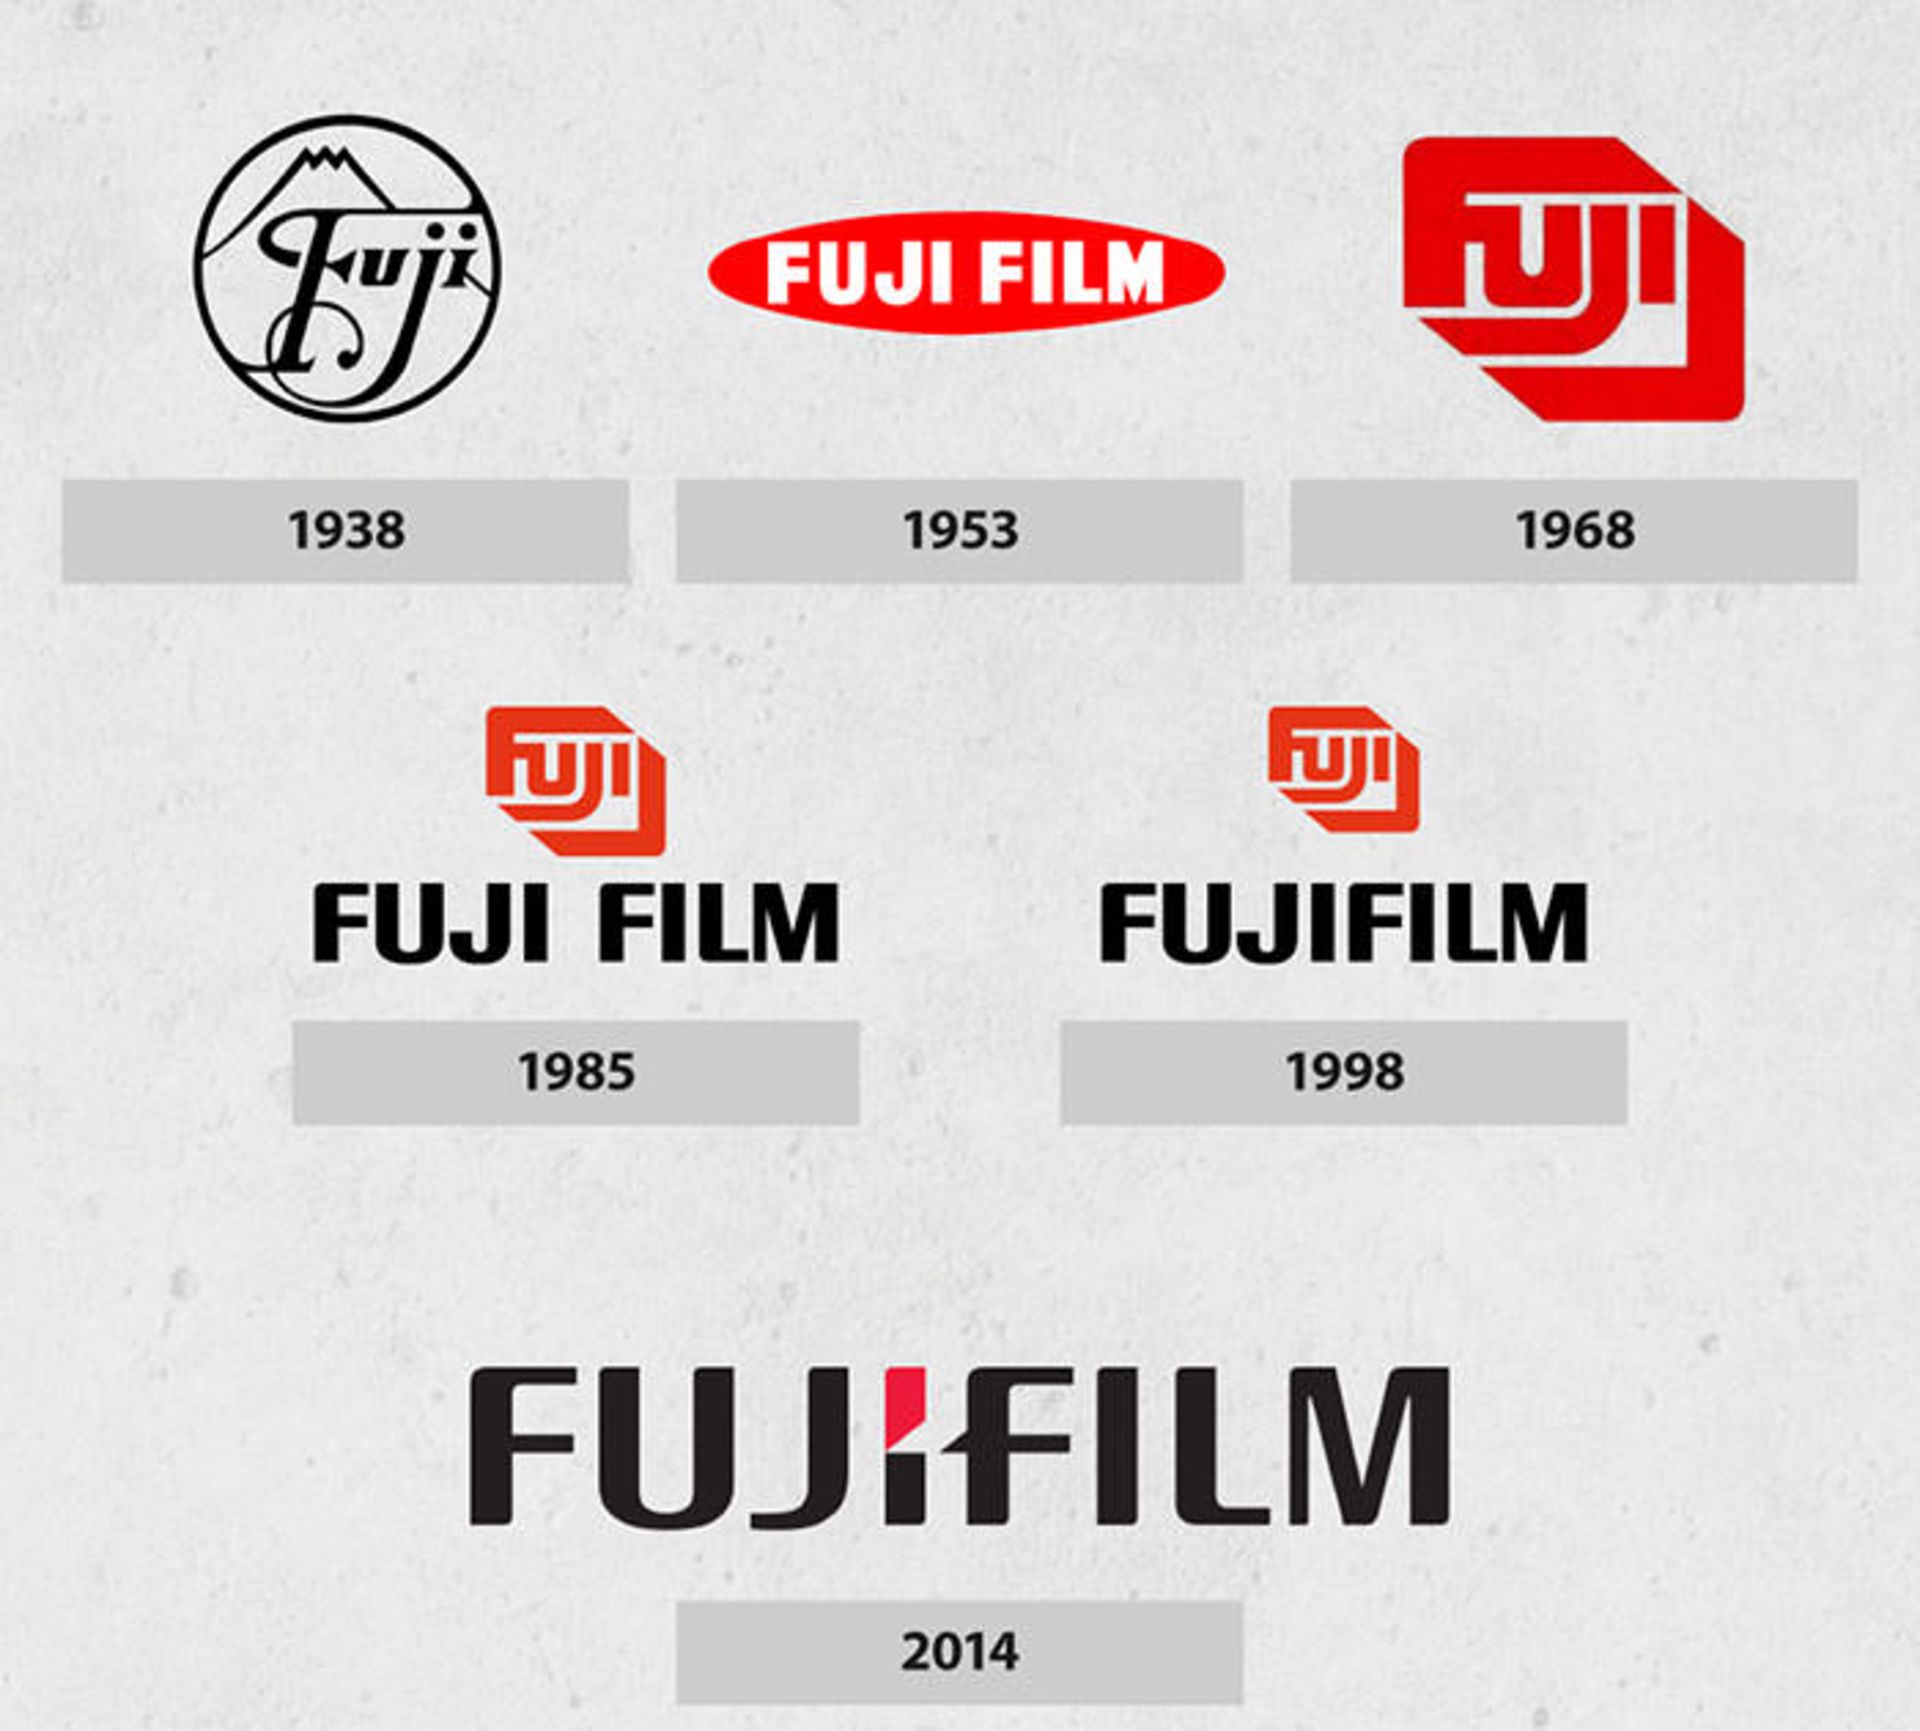 مرجع متخصصين ايران فوجي فيلم / Fujifilm